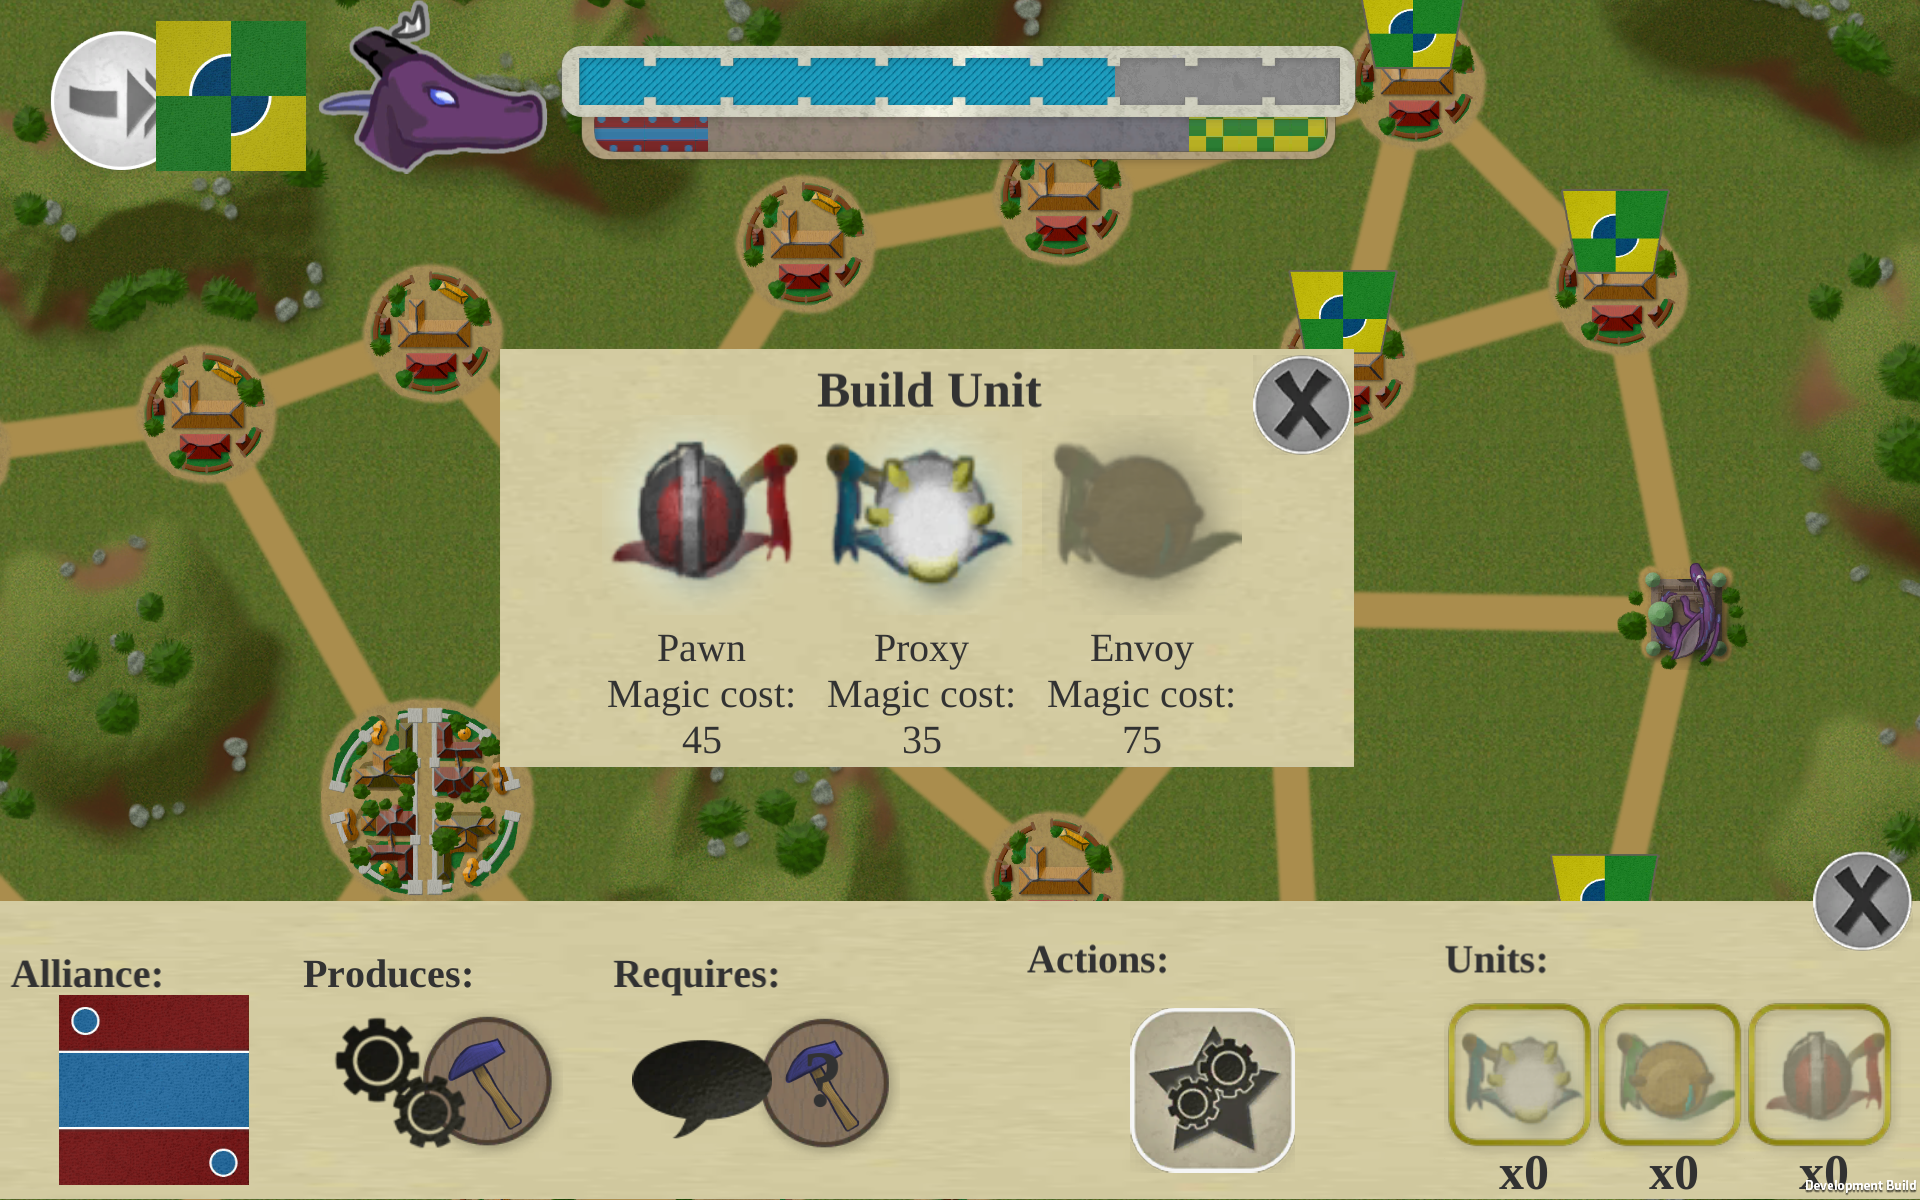 Screenshot of the game UI